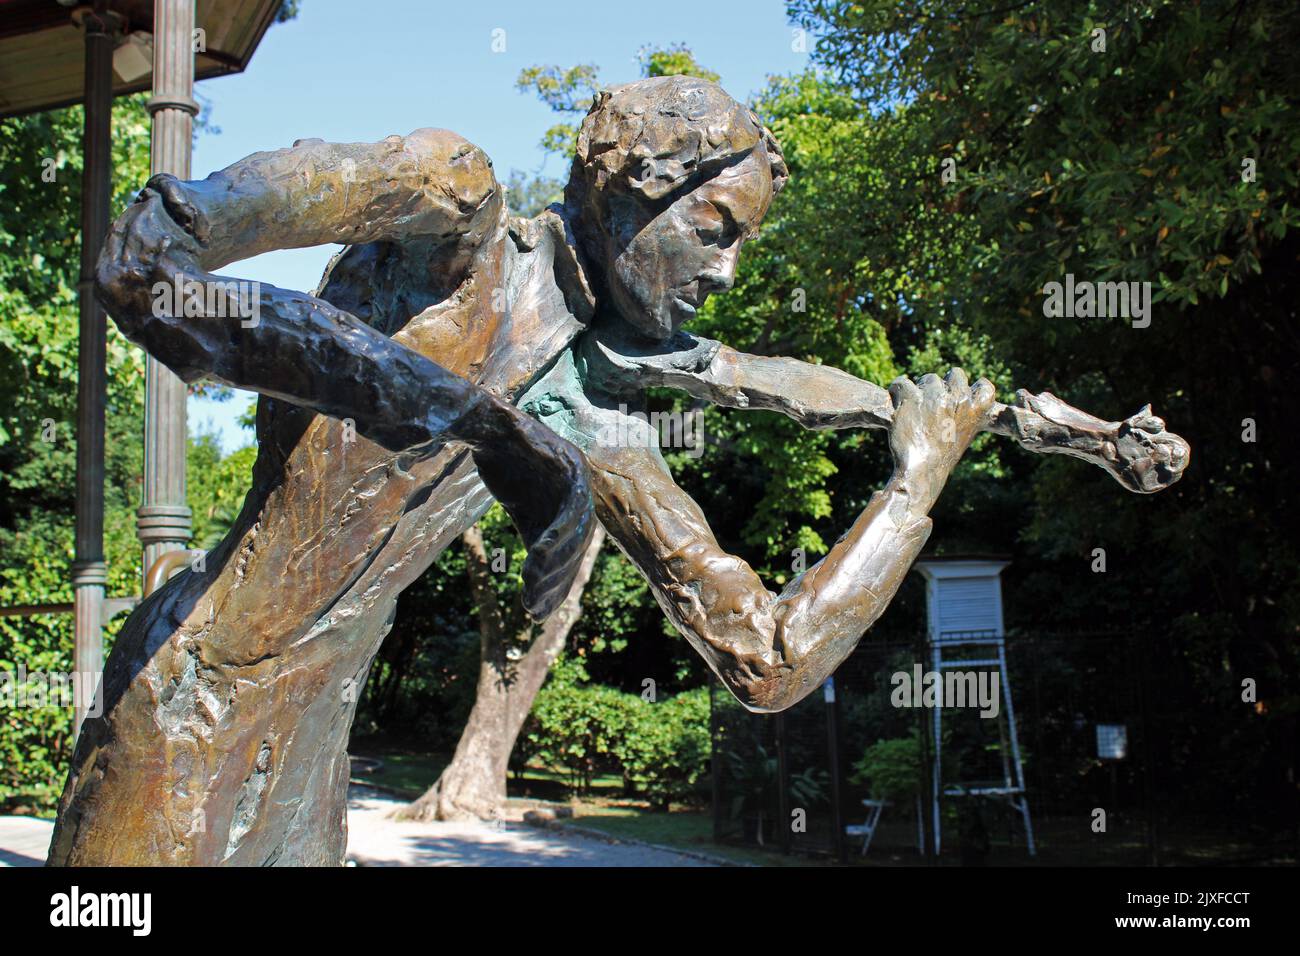 Famosi monumenti storici, Opatija, famoso parco pubblico Angiolina, statua del violinista Jan Kubelik, costa adriatica, baia del Quarnero, Croazia Foto Stock